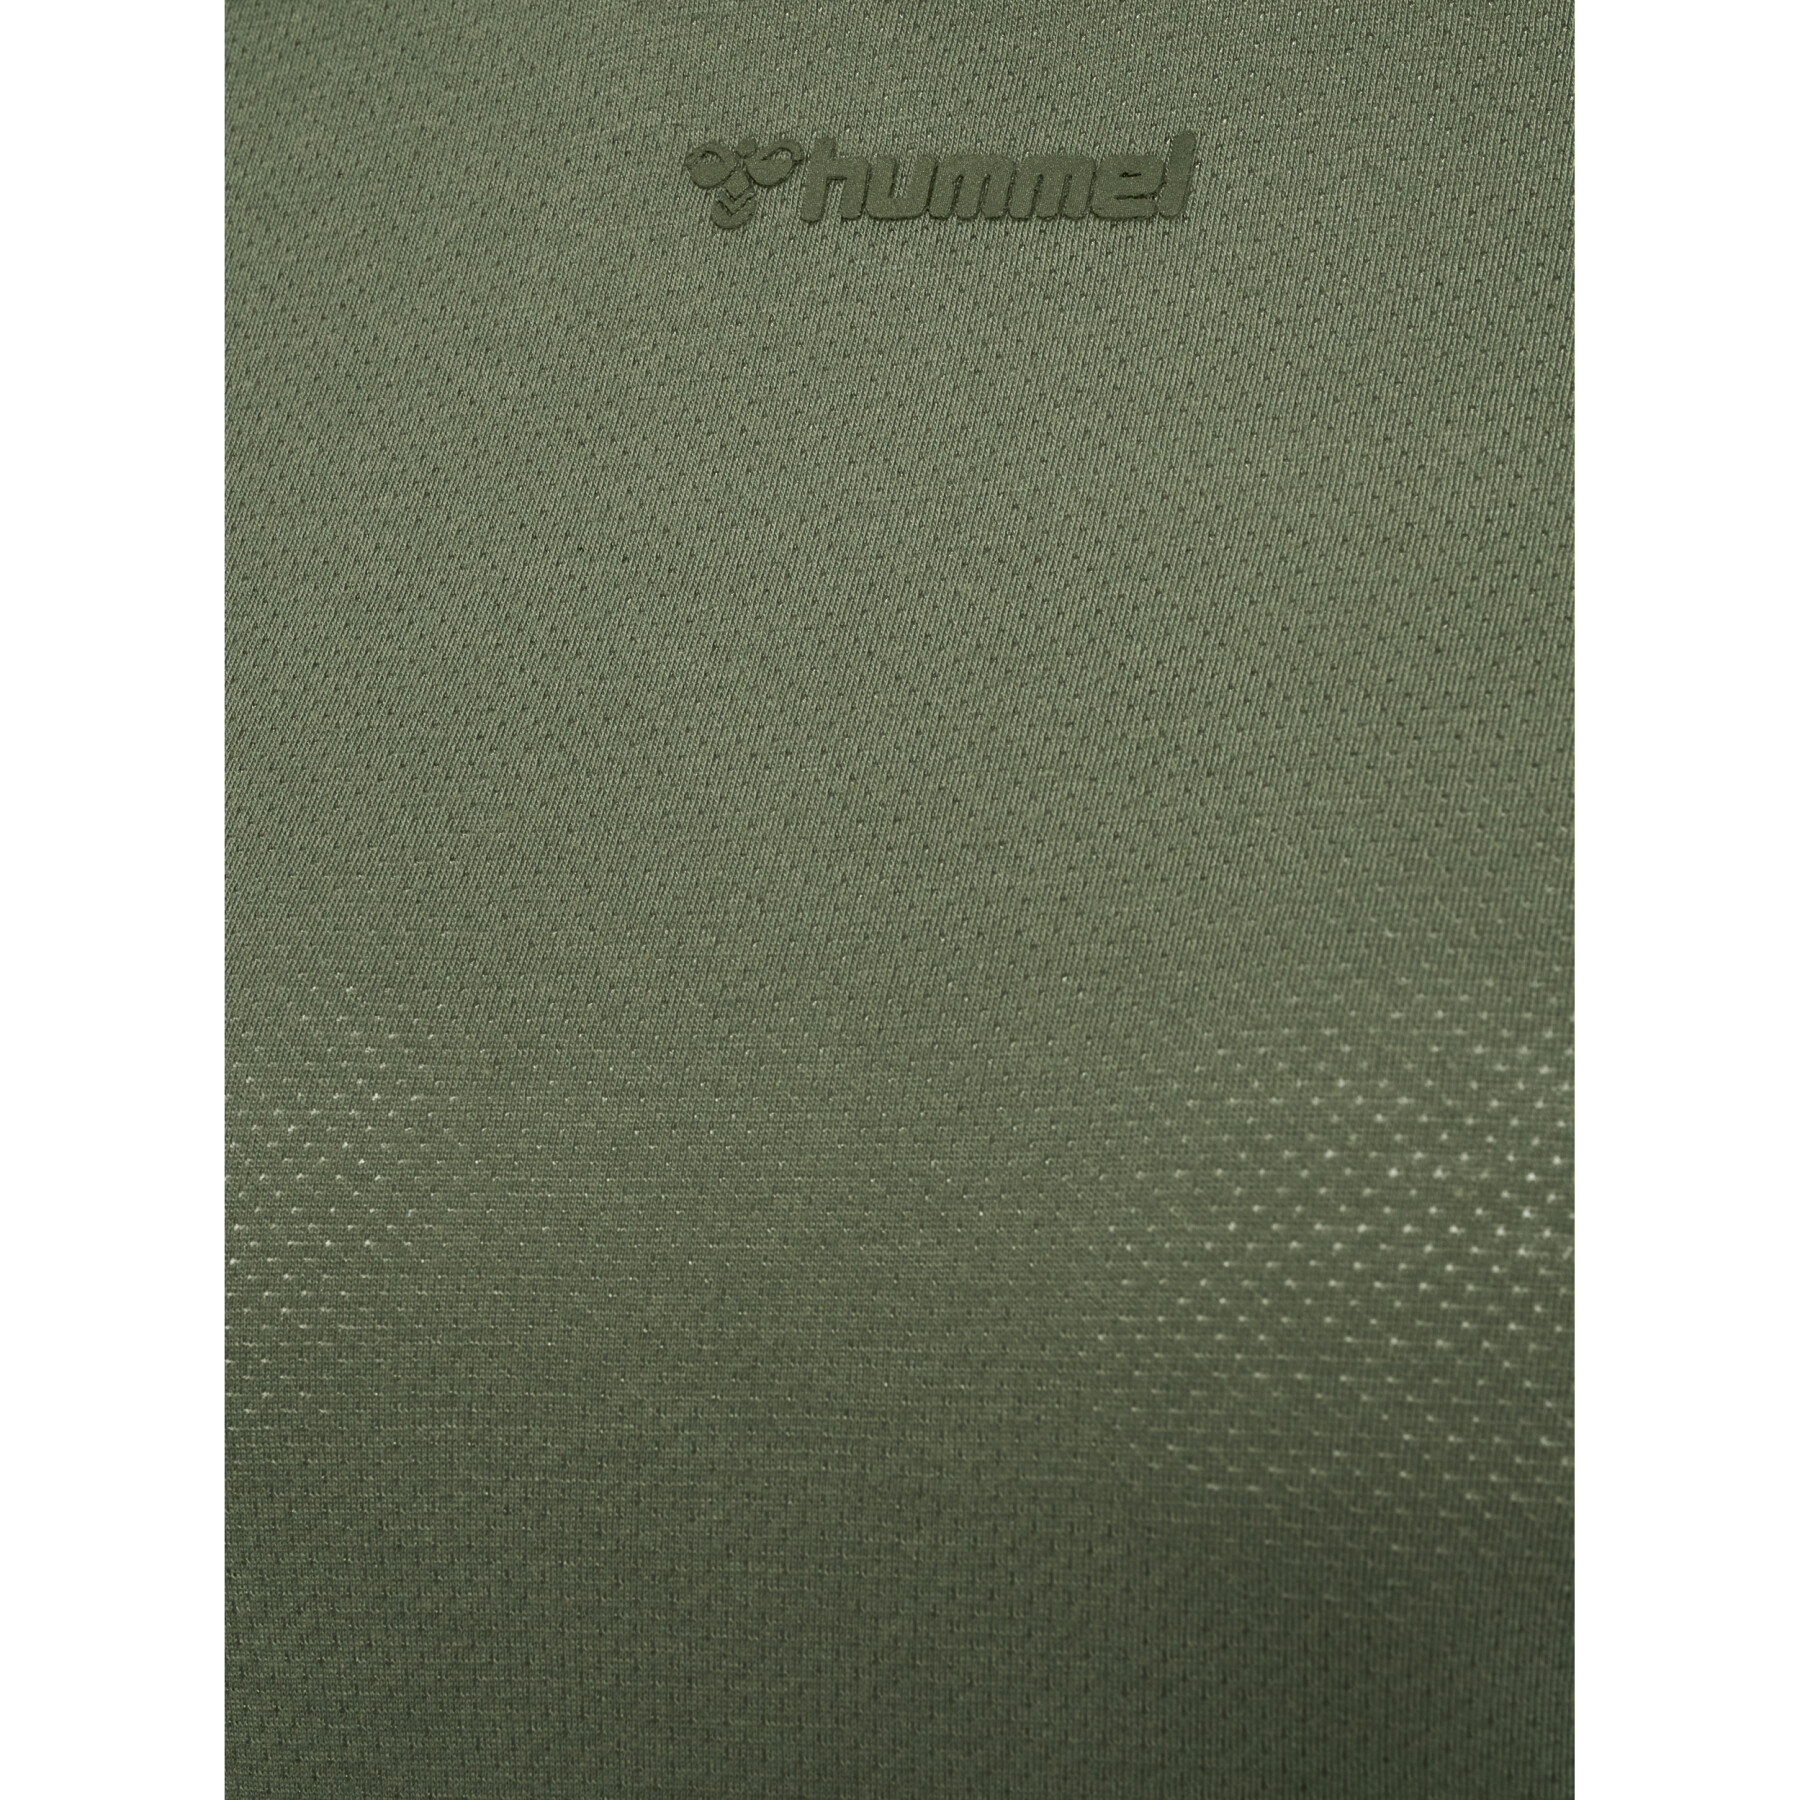 Camiseta manga larga mujer Hummel MT Vanja